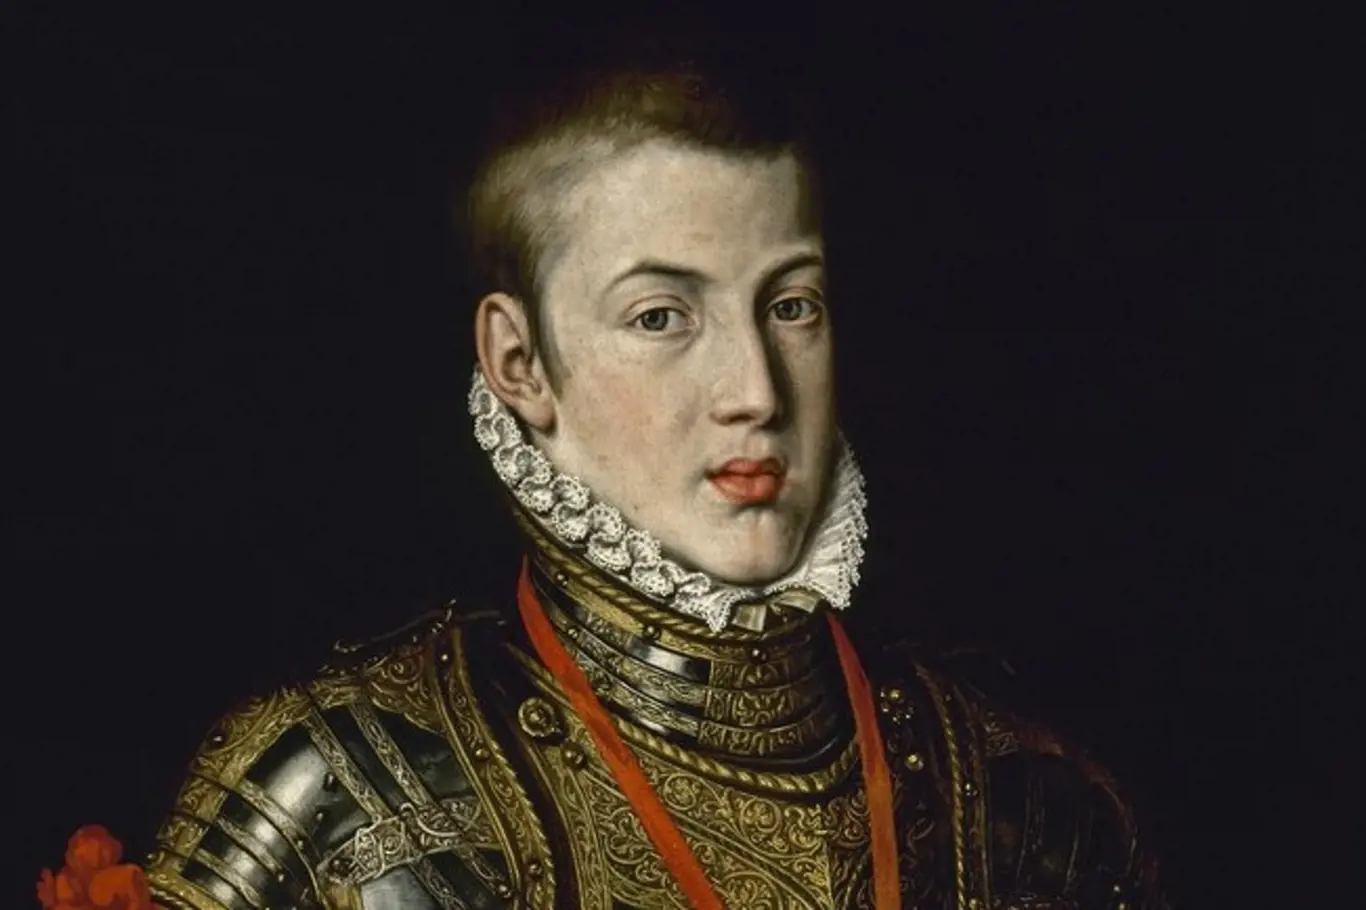 Karel Španělský trpěl závažnou duševní nemocí.